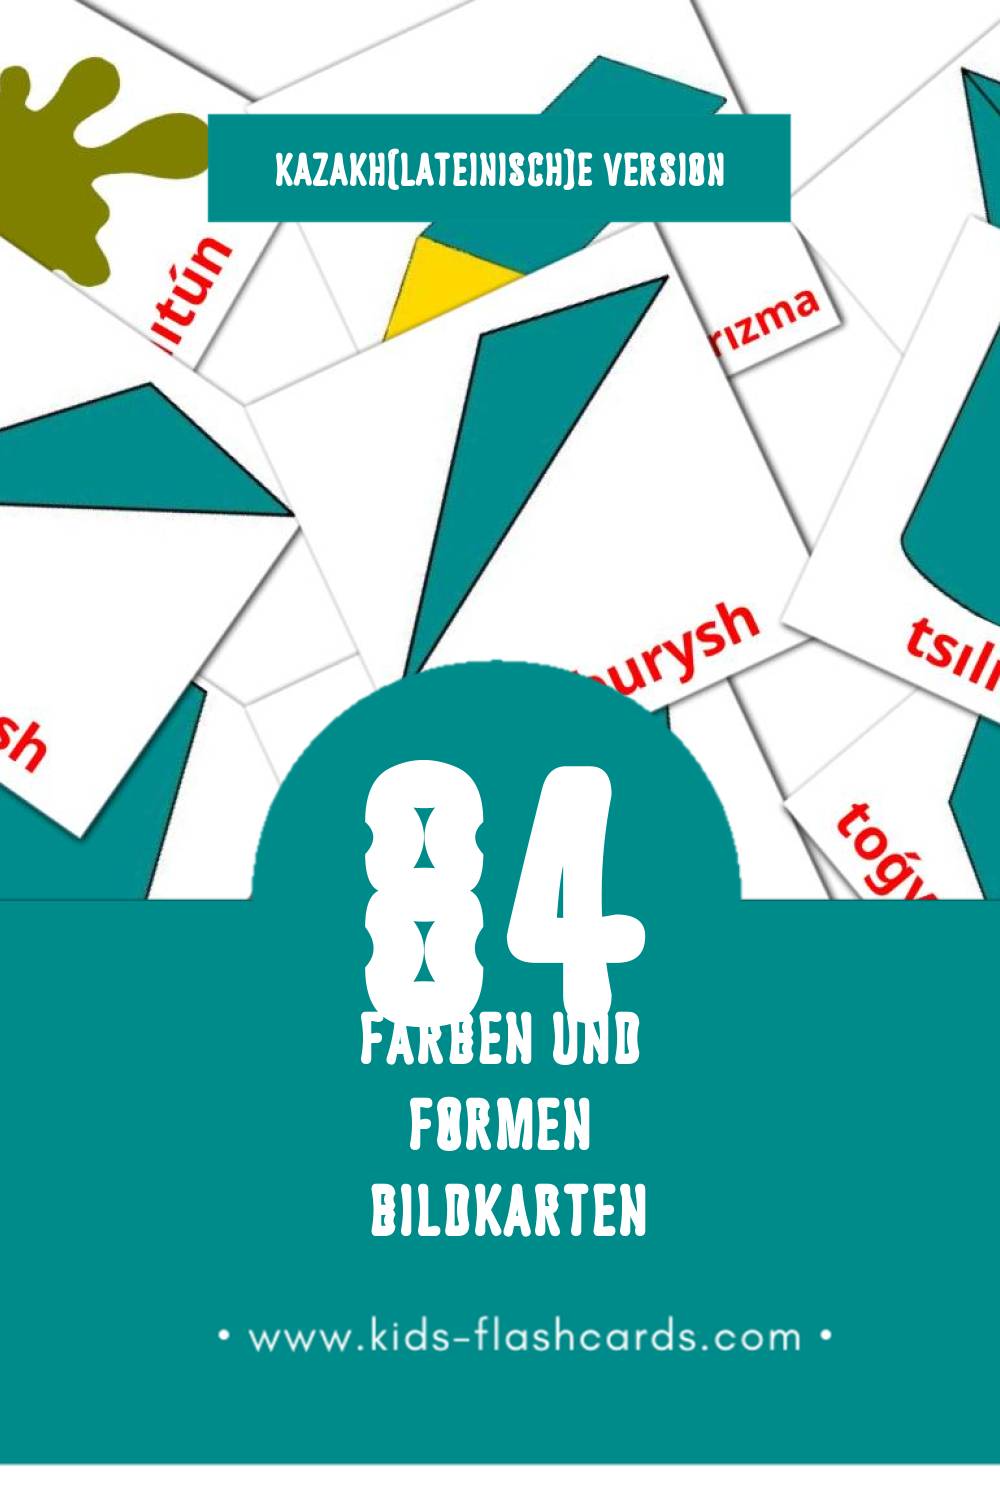 Visual  Túster men pіshіnder Flashcards für Kleinkinder (84 Karten in Kazakh(lateinisch))